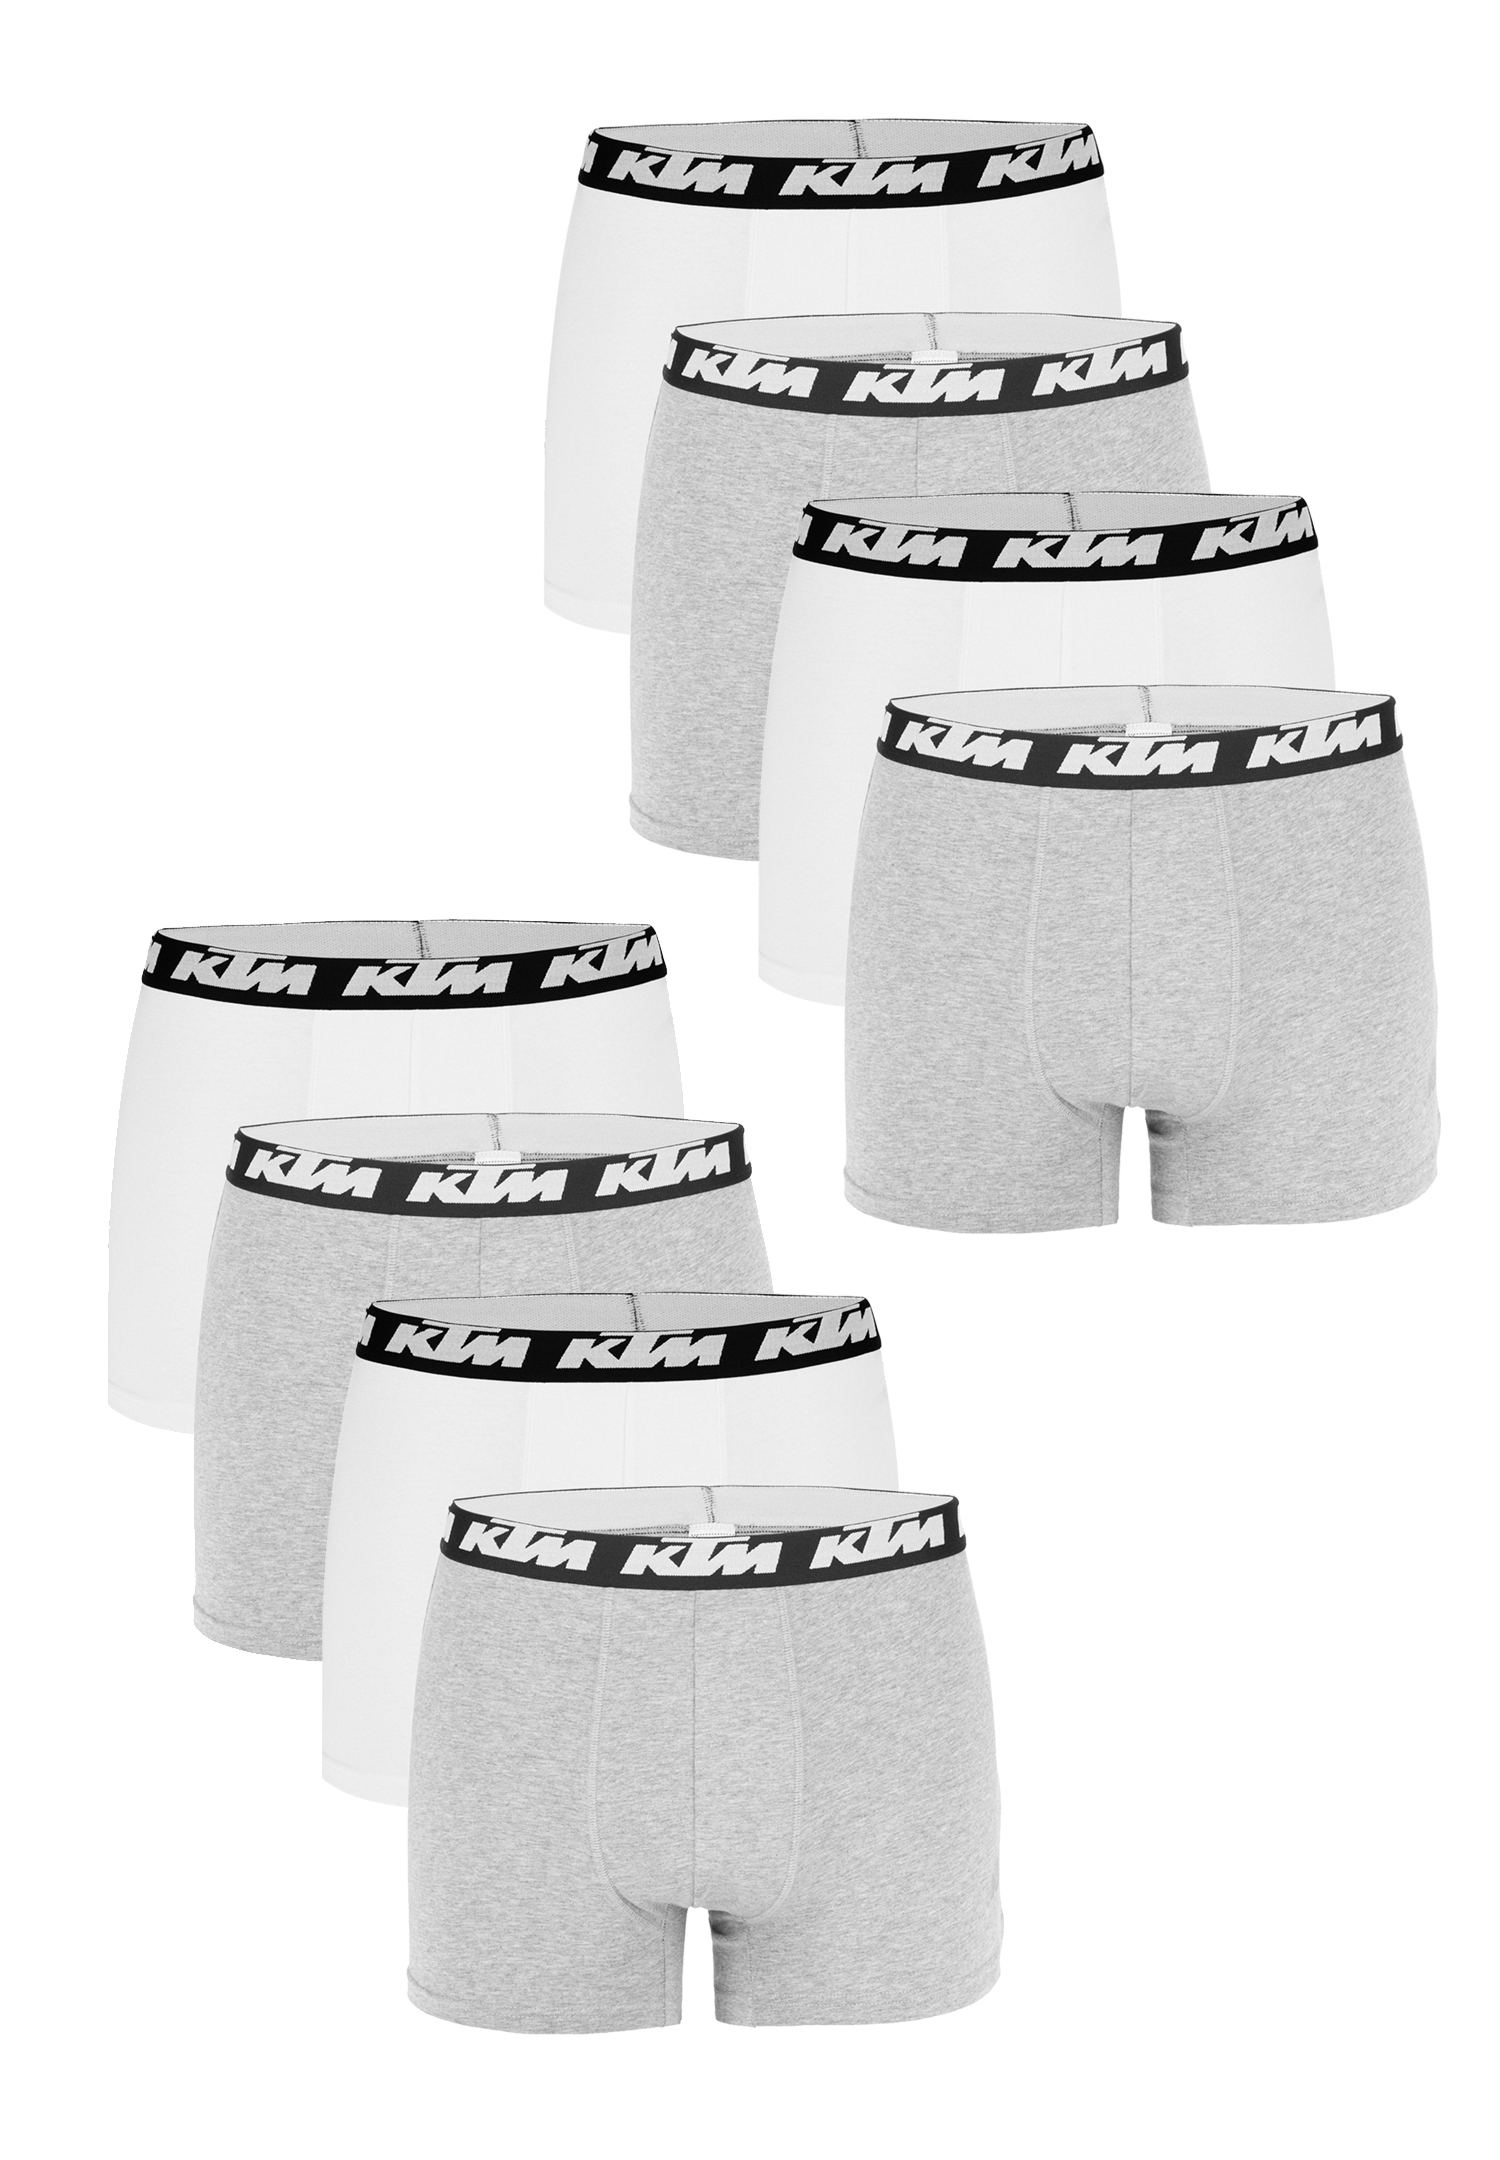 Боксеры KTM Boxershorts 8 шт, цвет Light Grey / White боксеры ktm boxershorts 4 шт цвет dark grey light grey